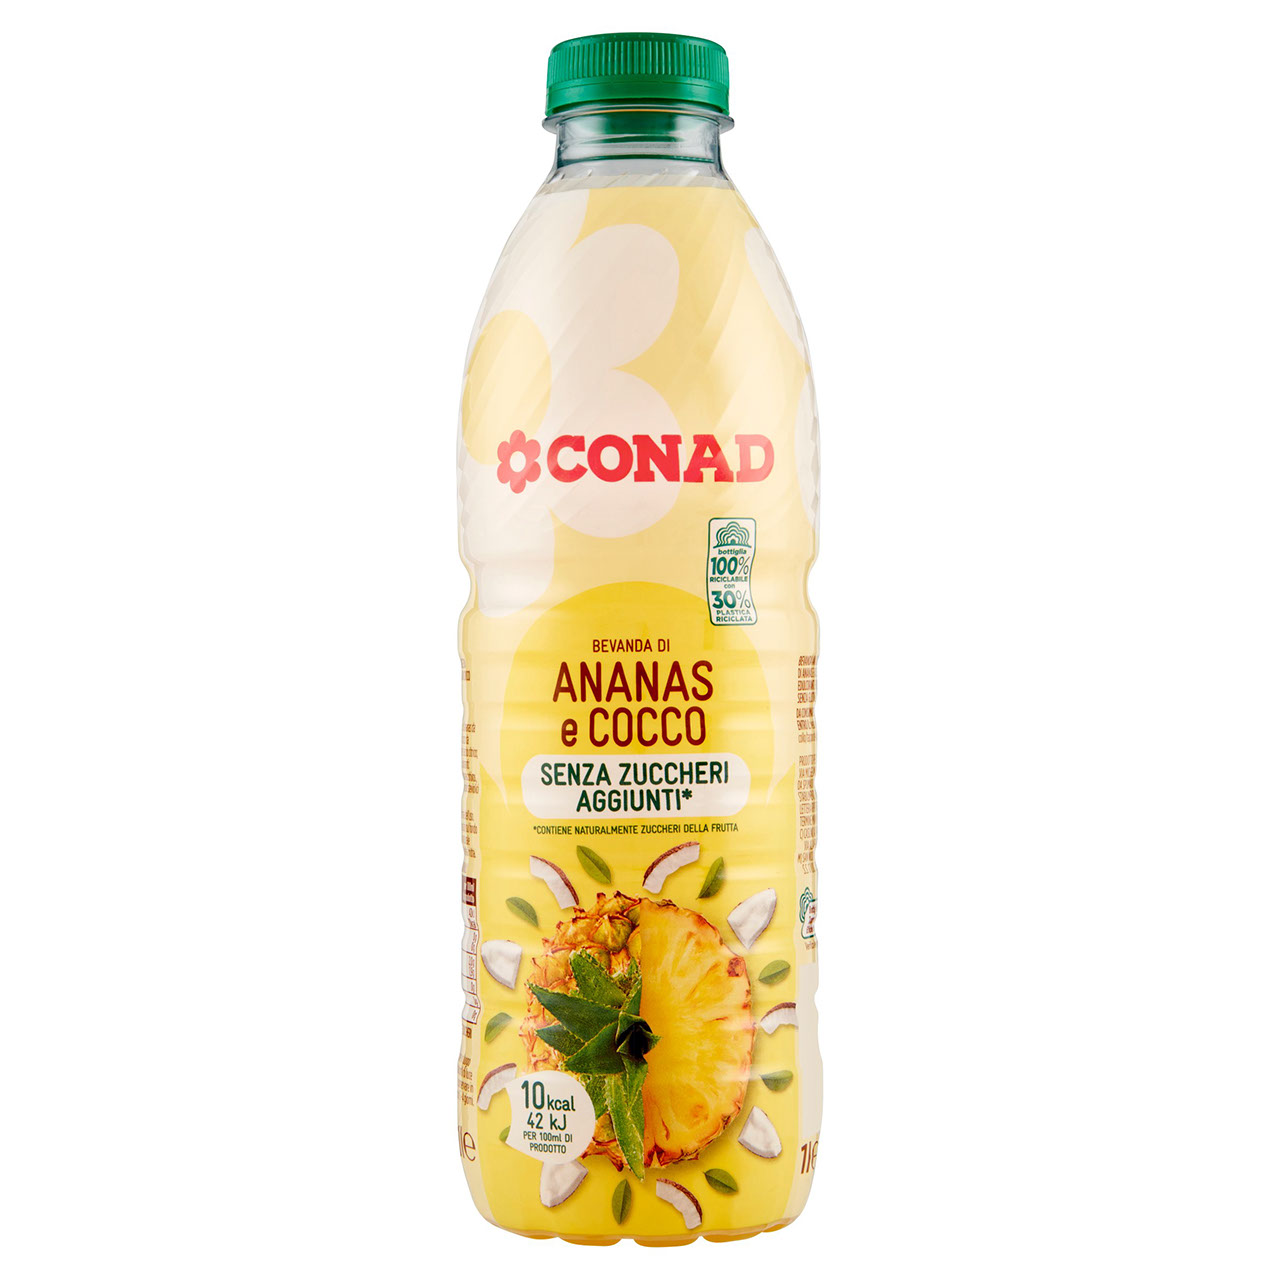 Bevanda di Ananas e Cocco Conad in vendita online